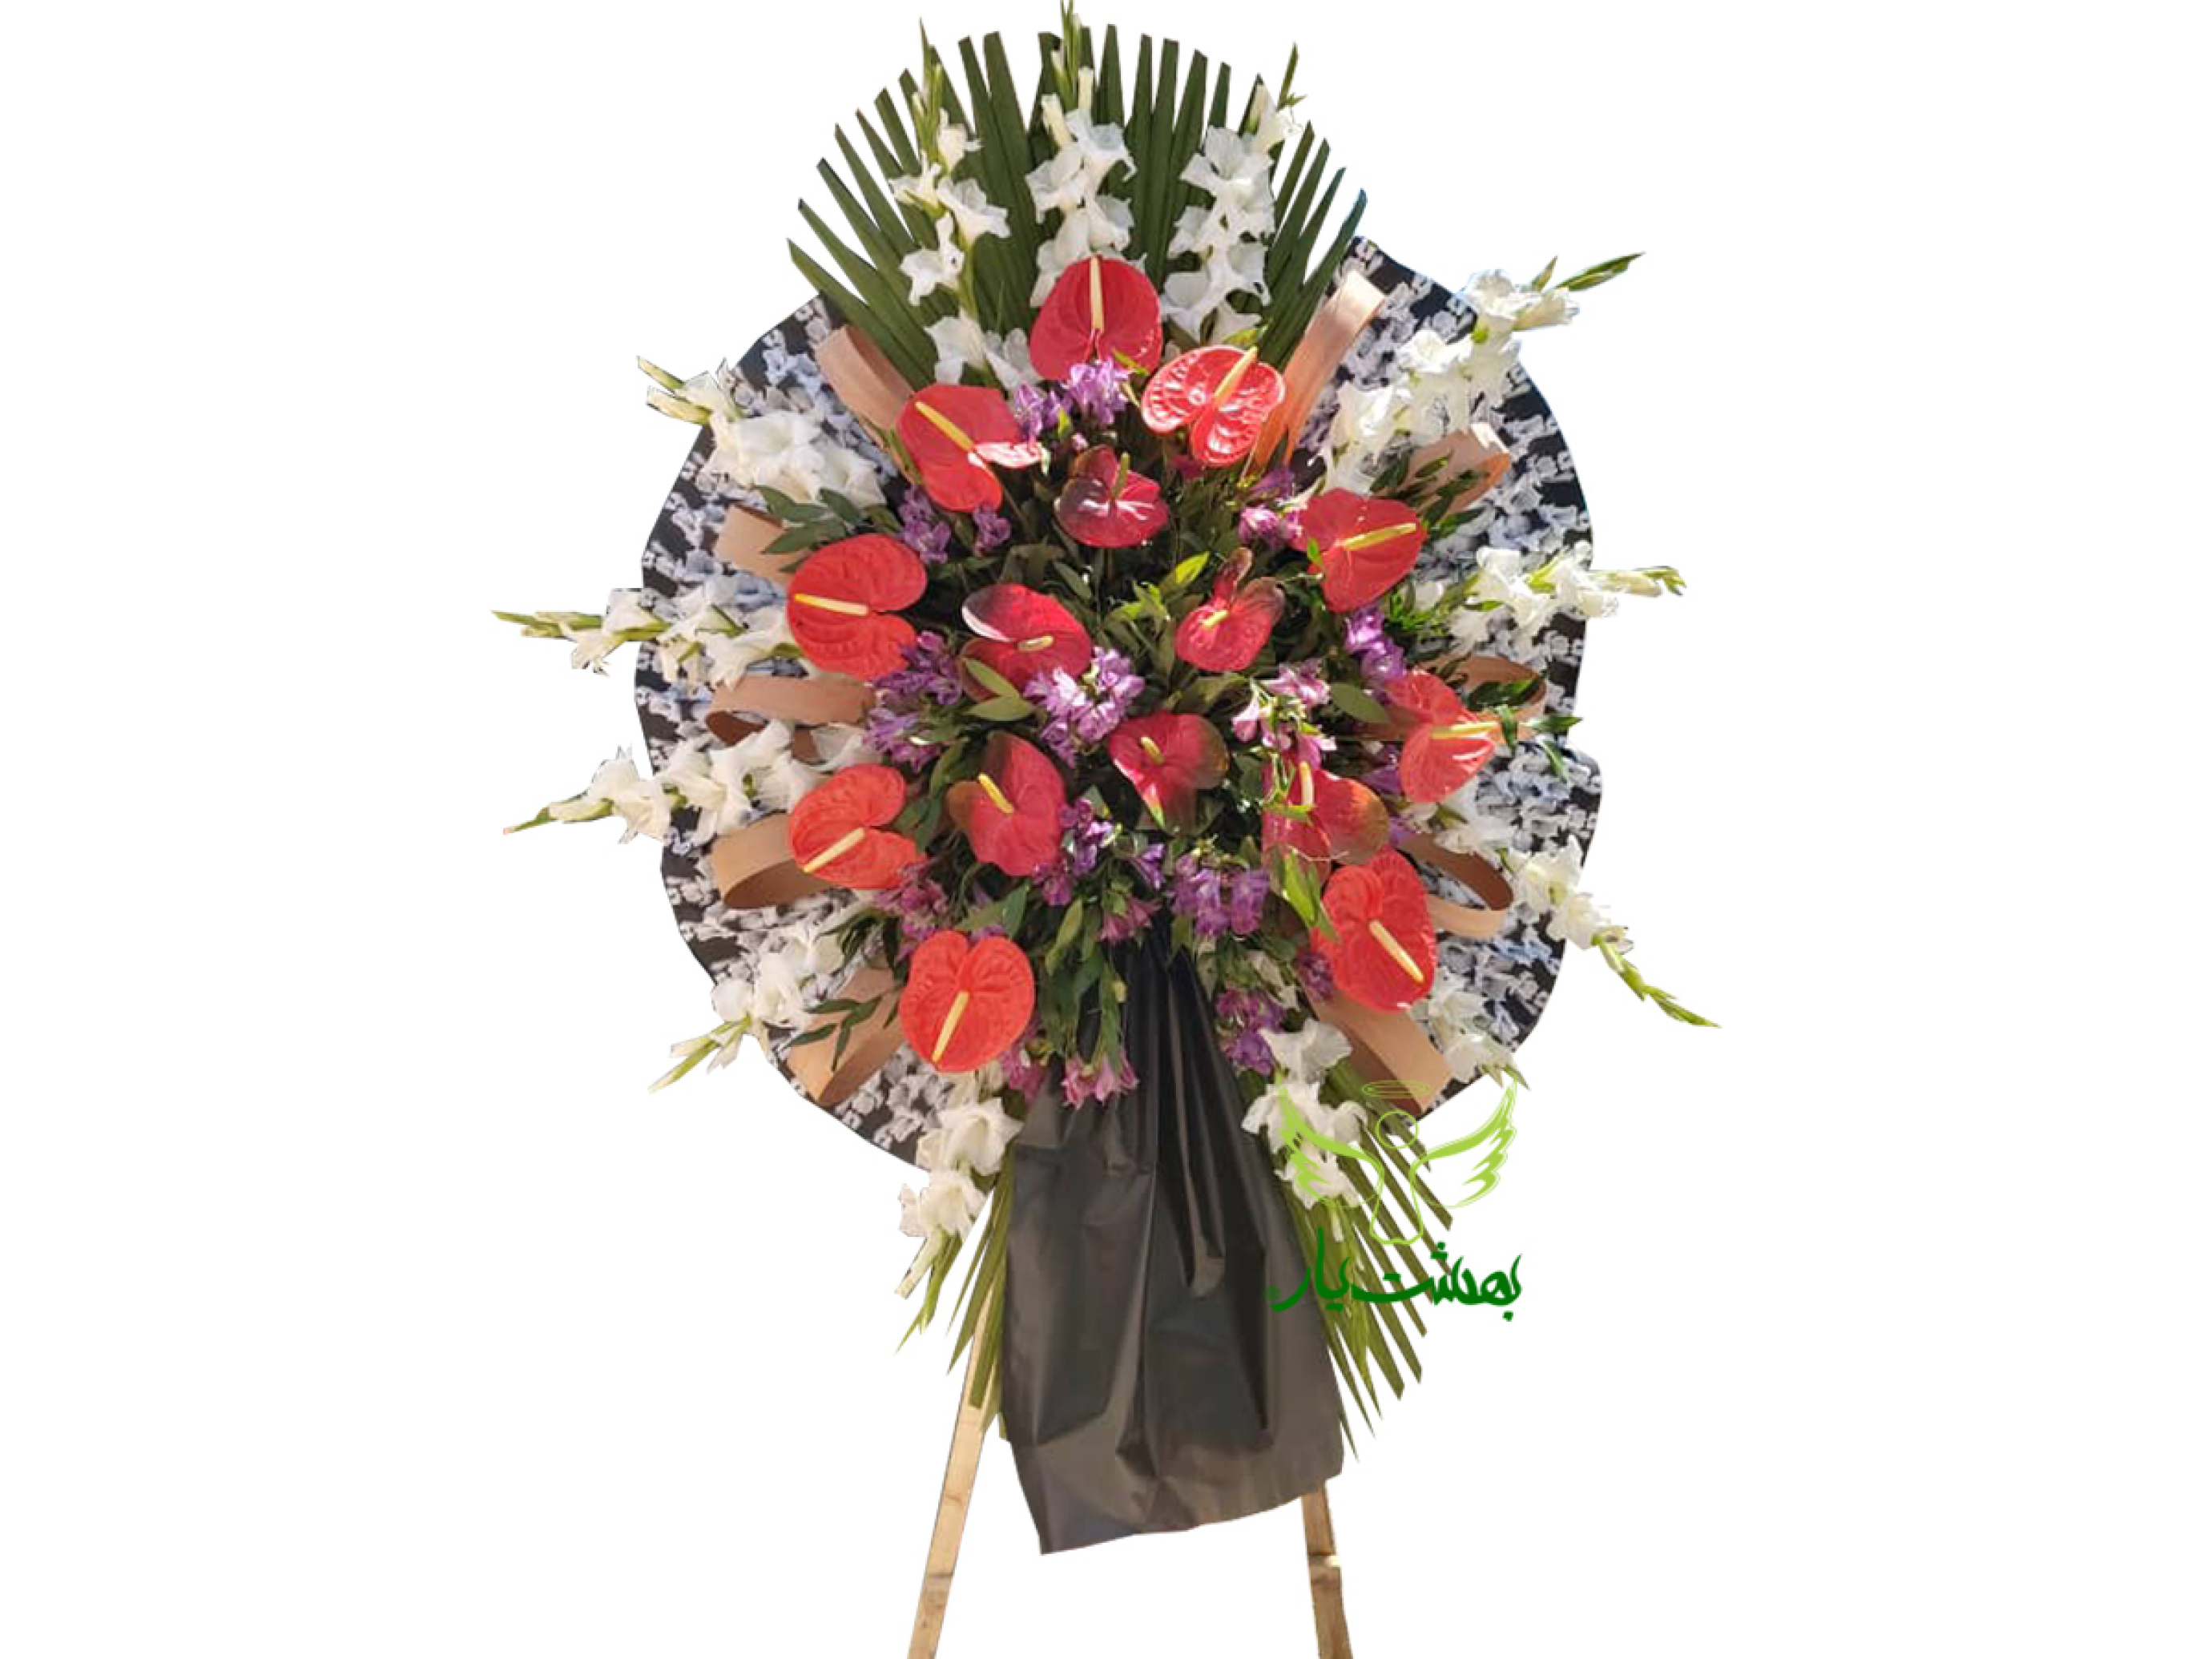  تاج گل ارزان یک طبقه مراسم ختم در بهشت زهرا خرید در بهشت یار 